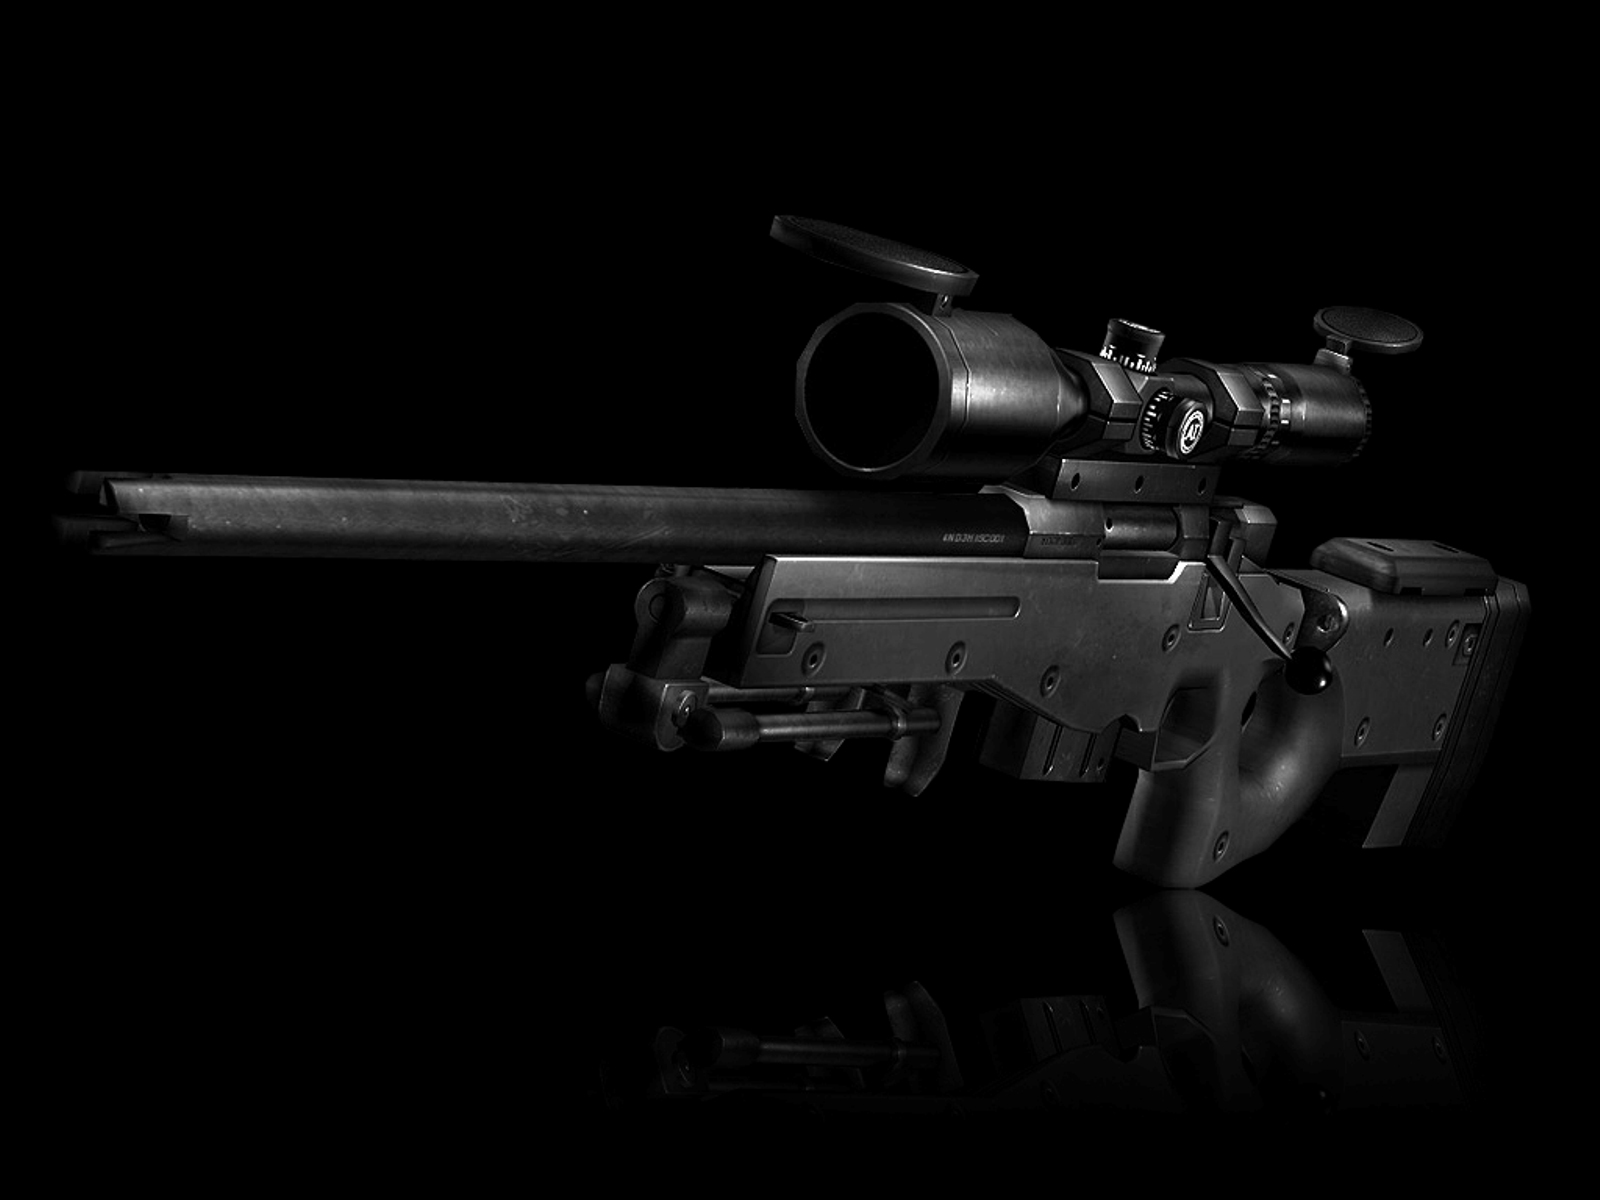 Sniper Rifle HD wallpapers, Desktop wallpaper - most viewed